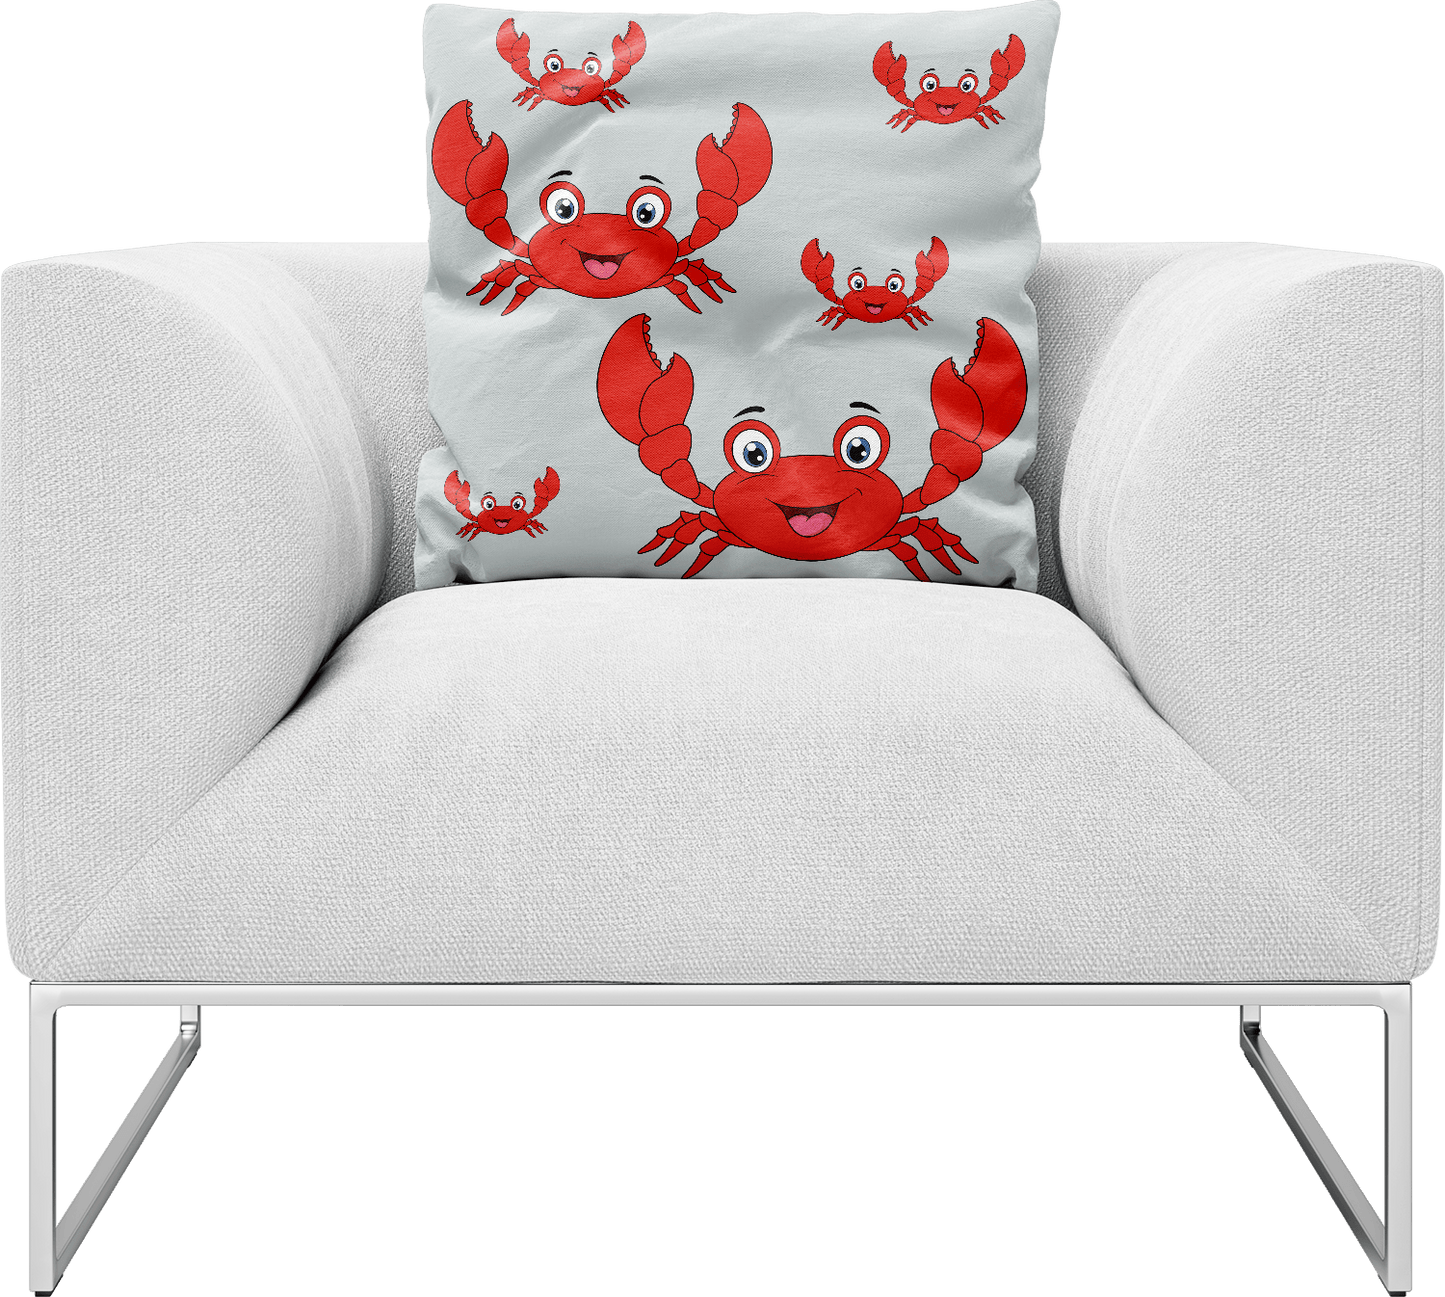 Muddy Crab Pillows Cushions - fungear.com.au